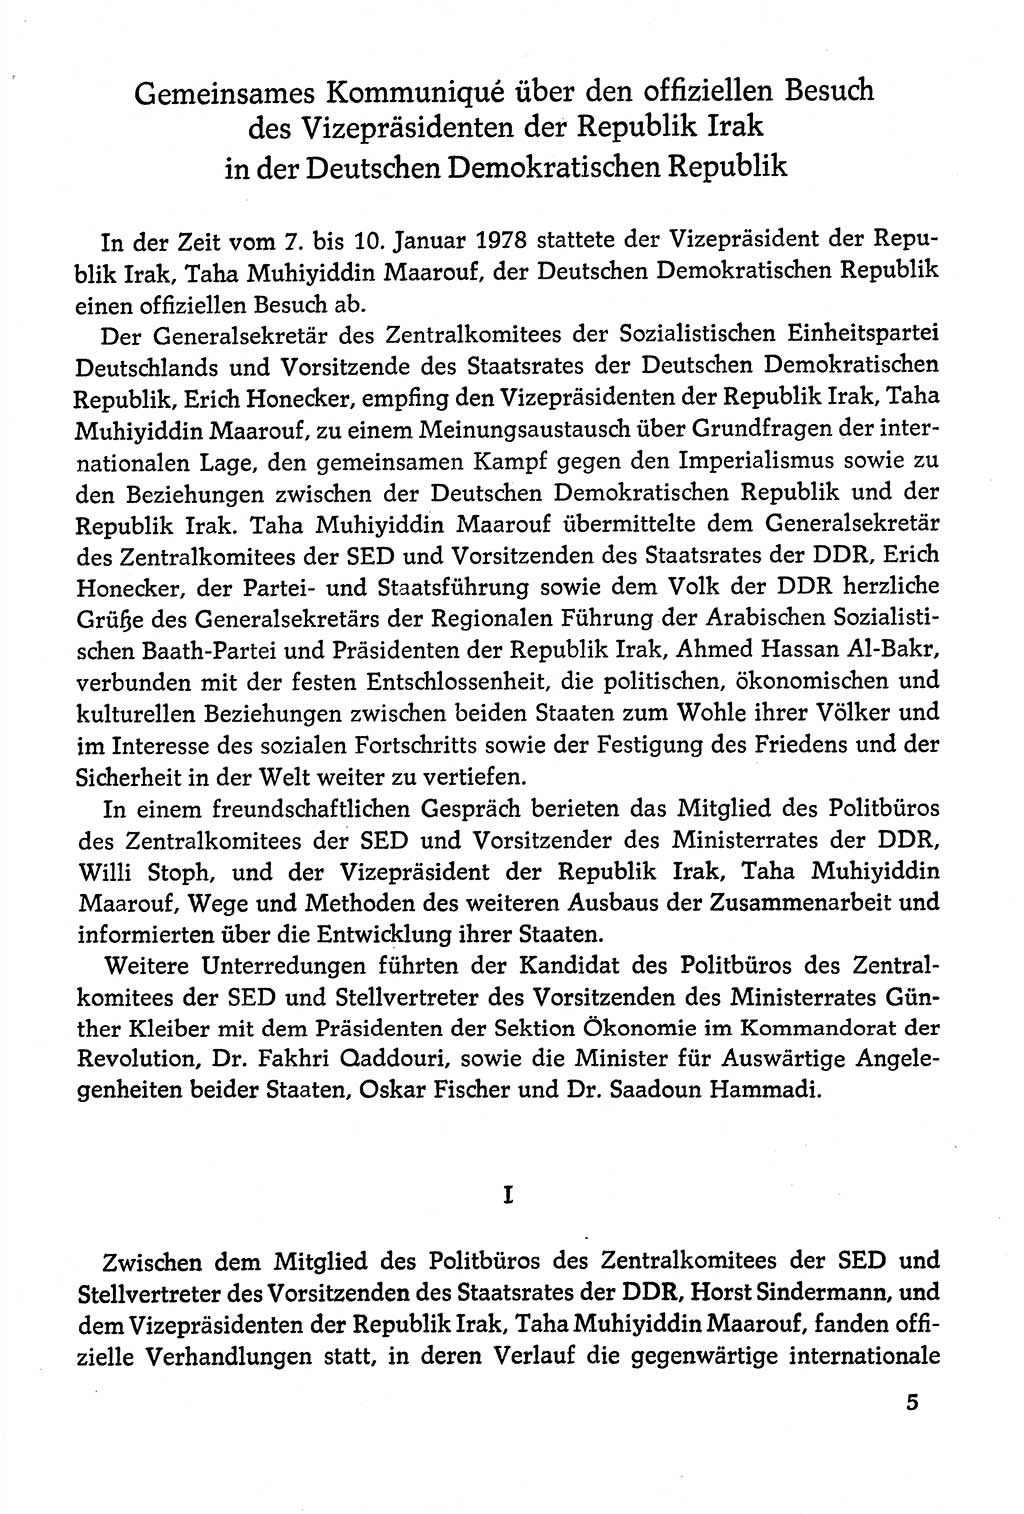 Dokumente der Sozialistischen Einheitspartei Deutschlands (SED) [Deutsche Demokratische Republik (DDR)] 1978-1979, Seite 5 (Dok. SED DDR 1978-1979, S. 5)